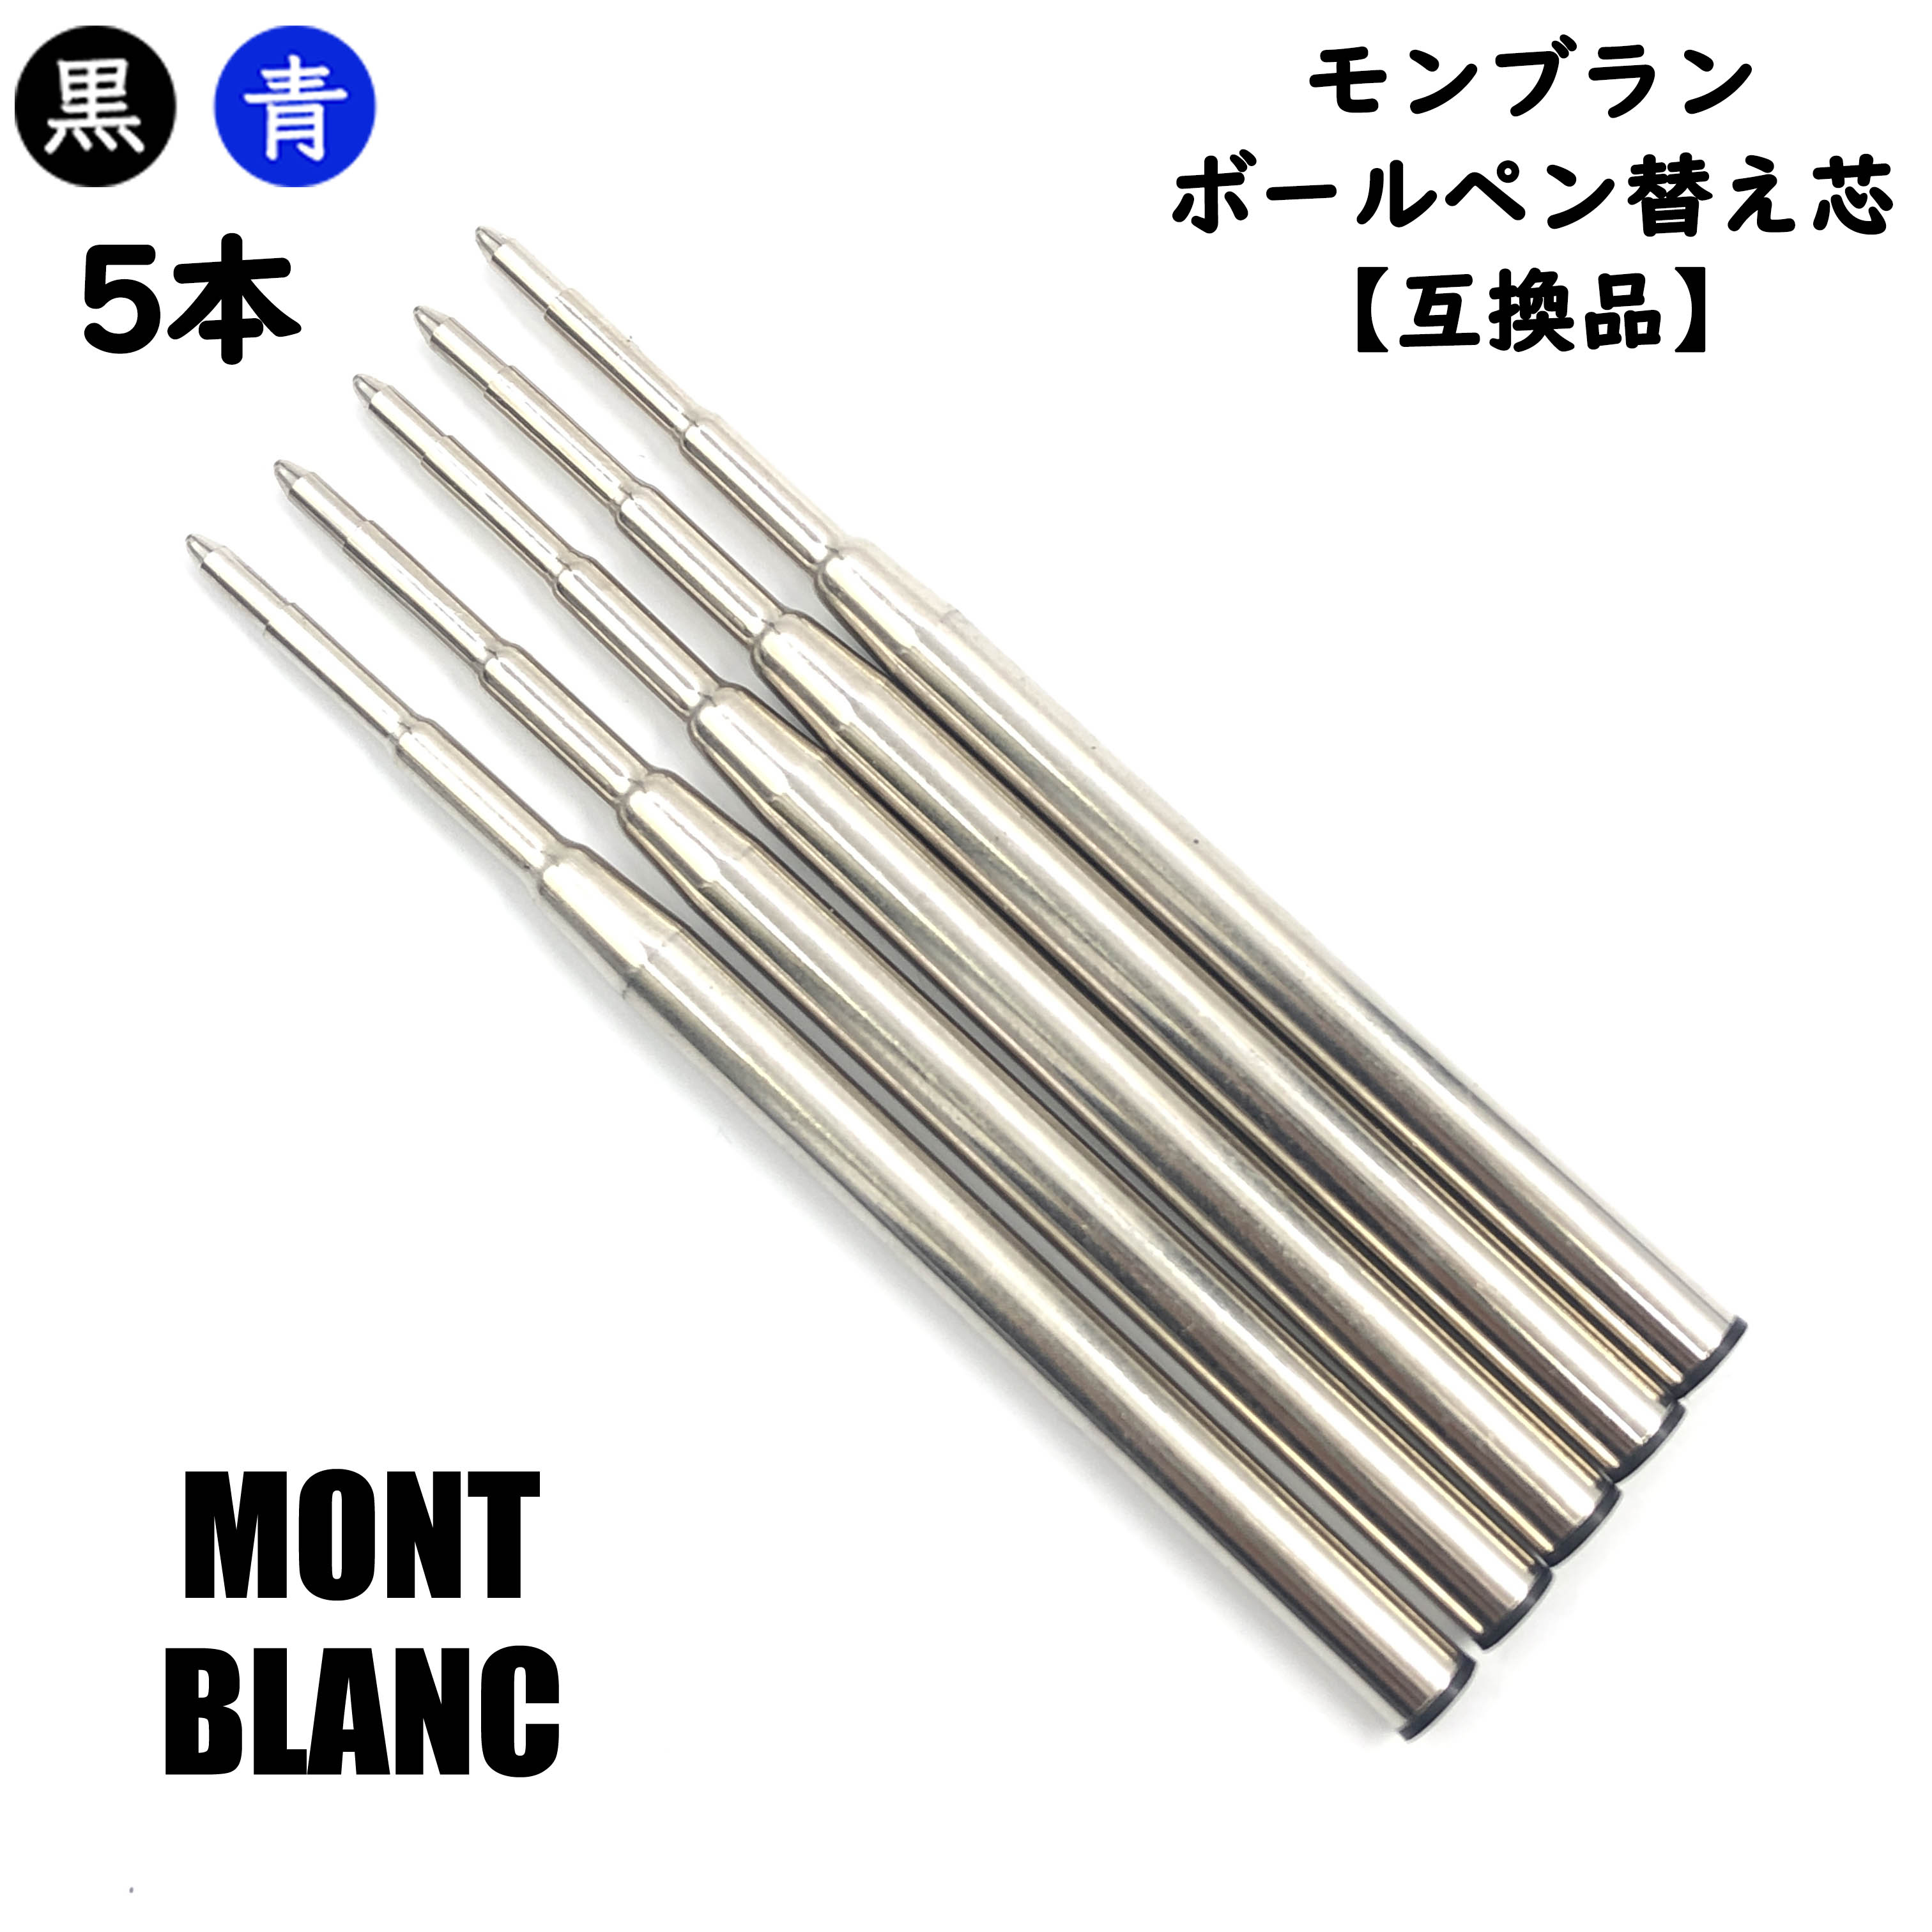 【楽天市場】モンブラン ボールペン 替芯 リフィル MONTBLANC 